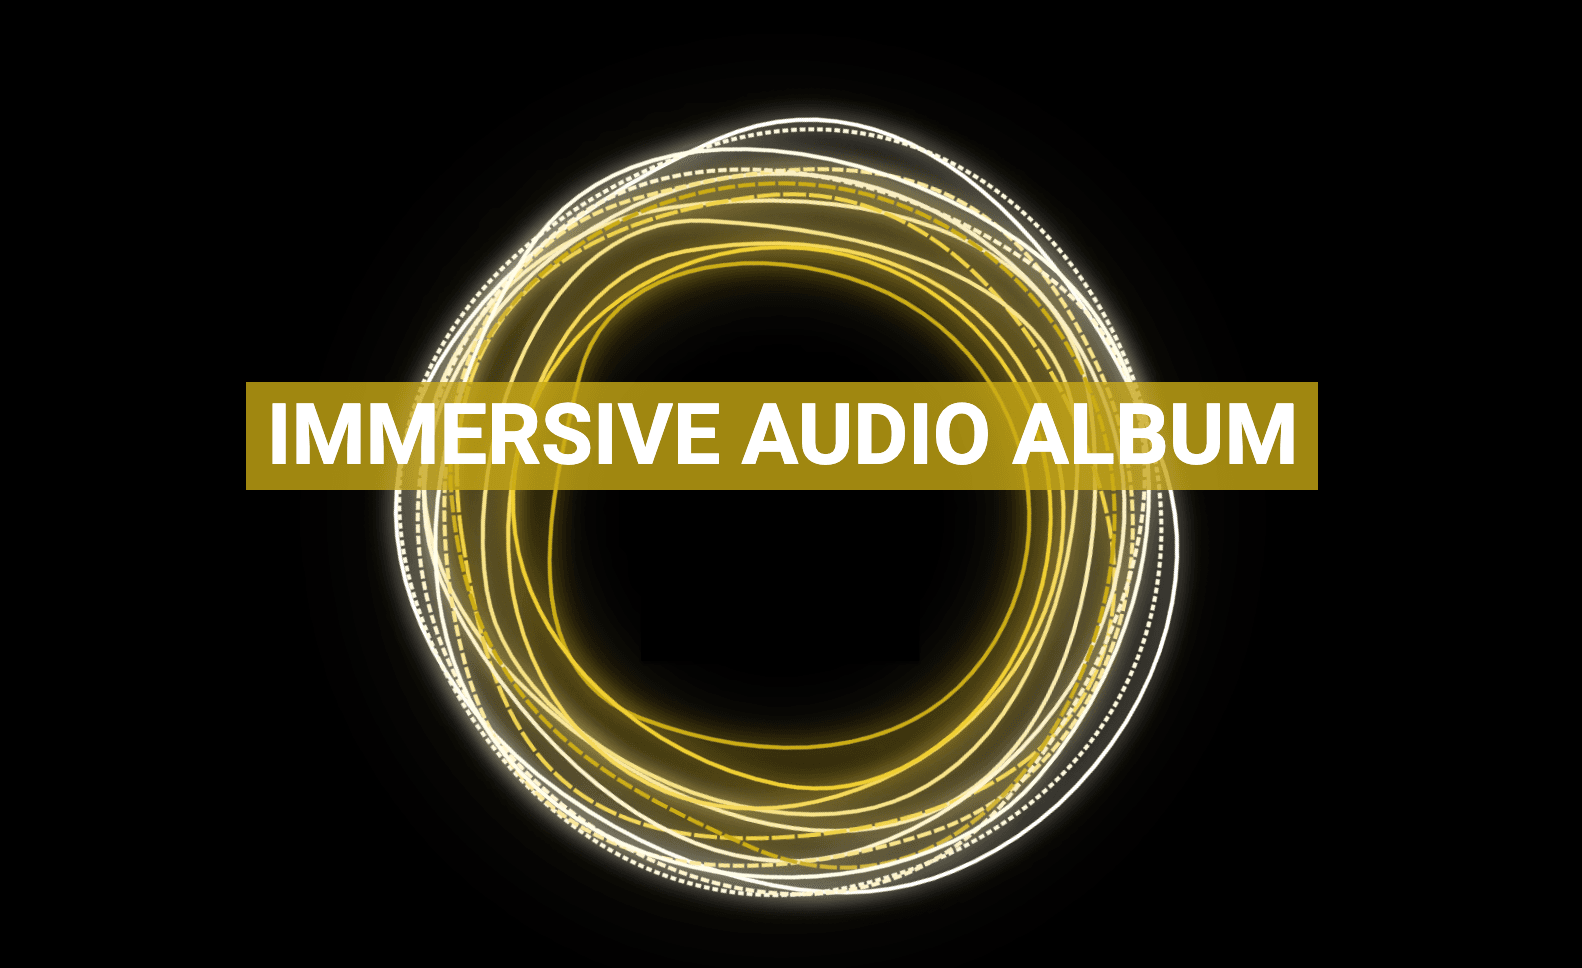 ImmersiveAudioAlbum バナー